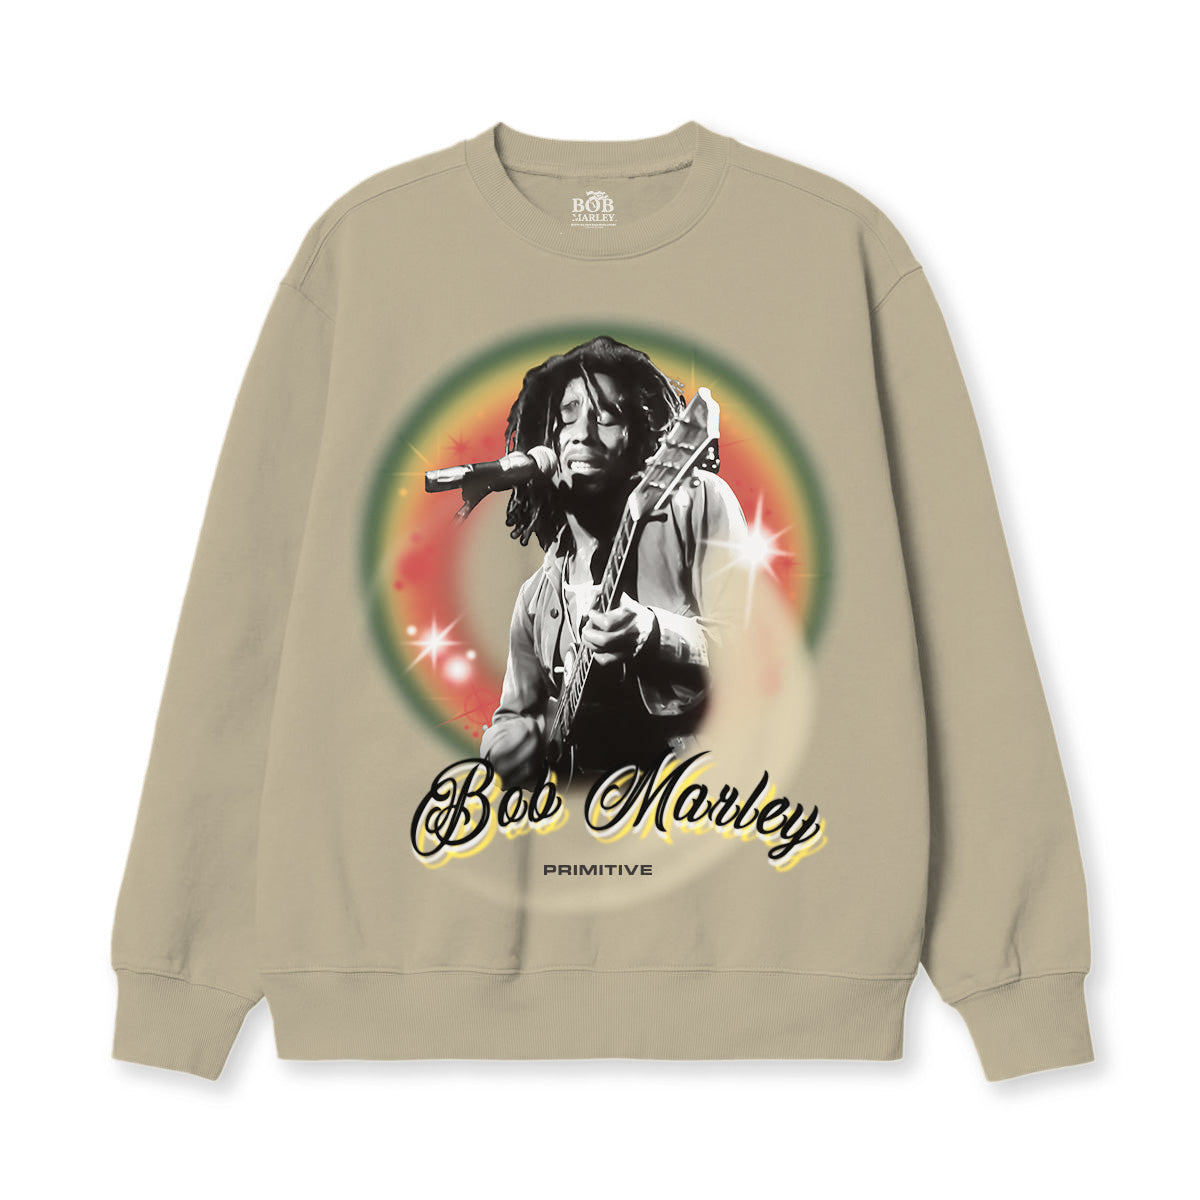 Primitive x Bob Marley Dreams Crewneck Sweatshirt - Brown image 1